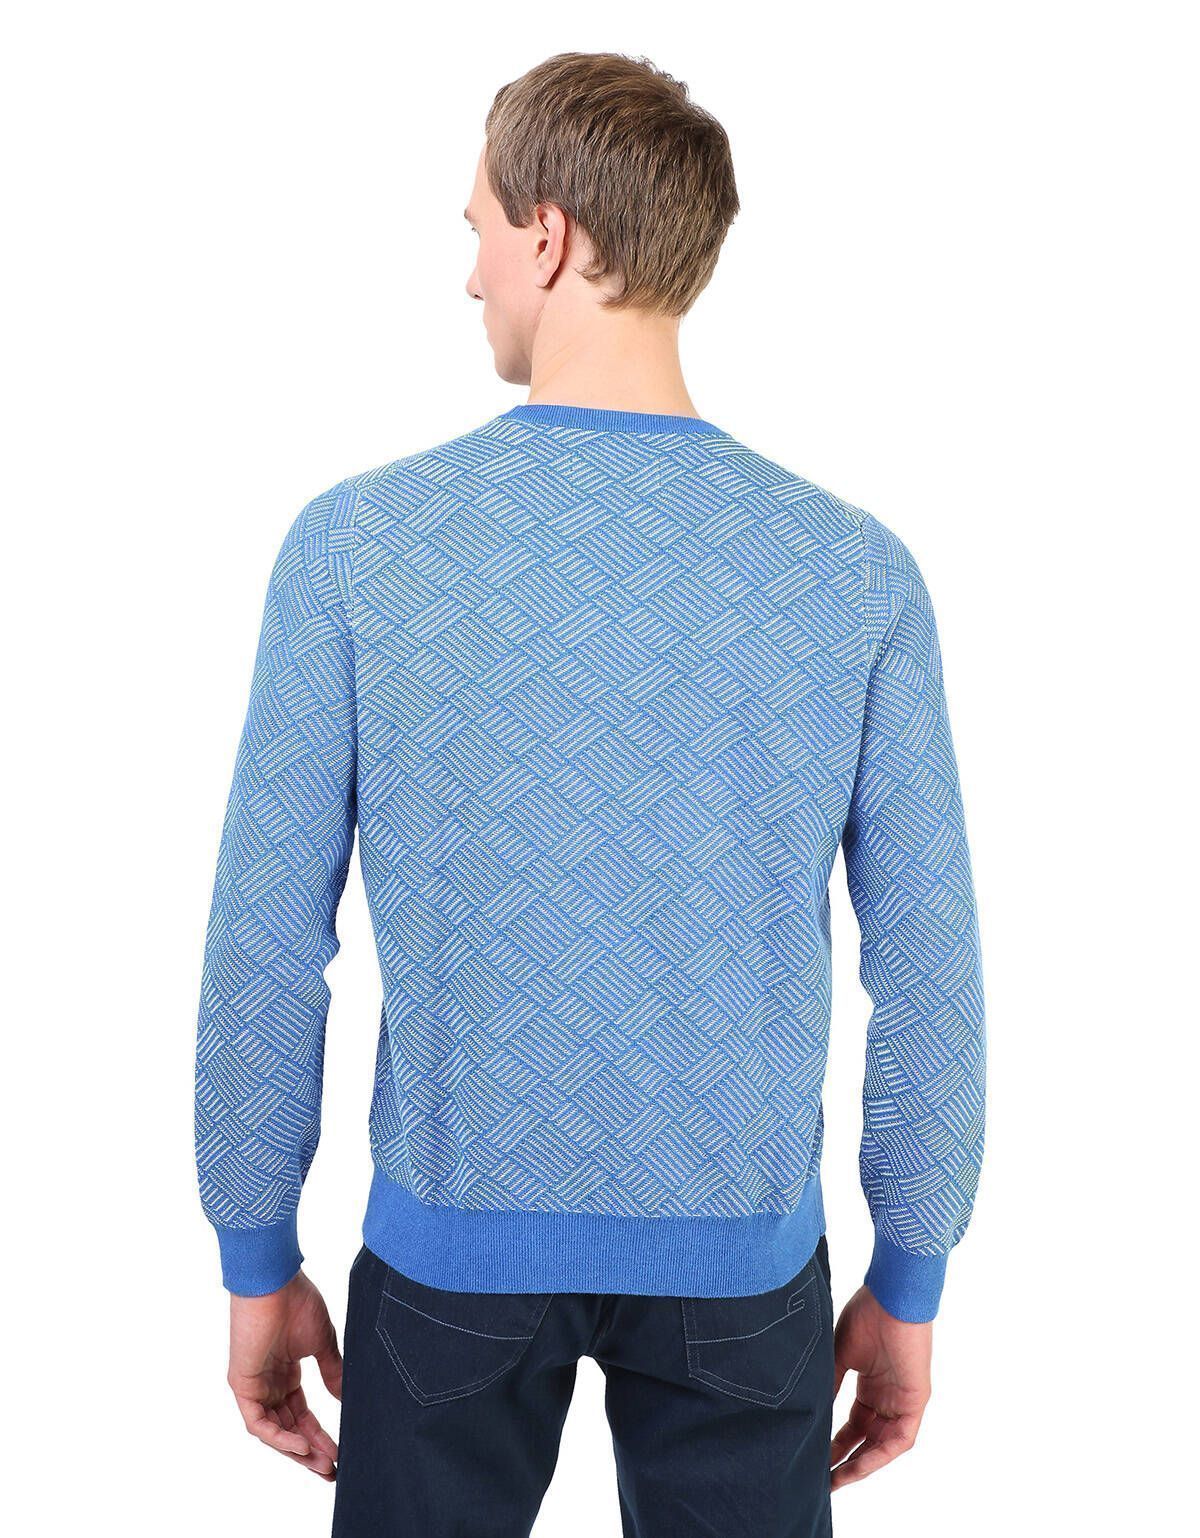 Пуловер с круглым вырезом синий с рисунком | купить в интернет-магазине Olymp-Men